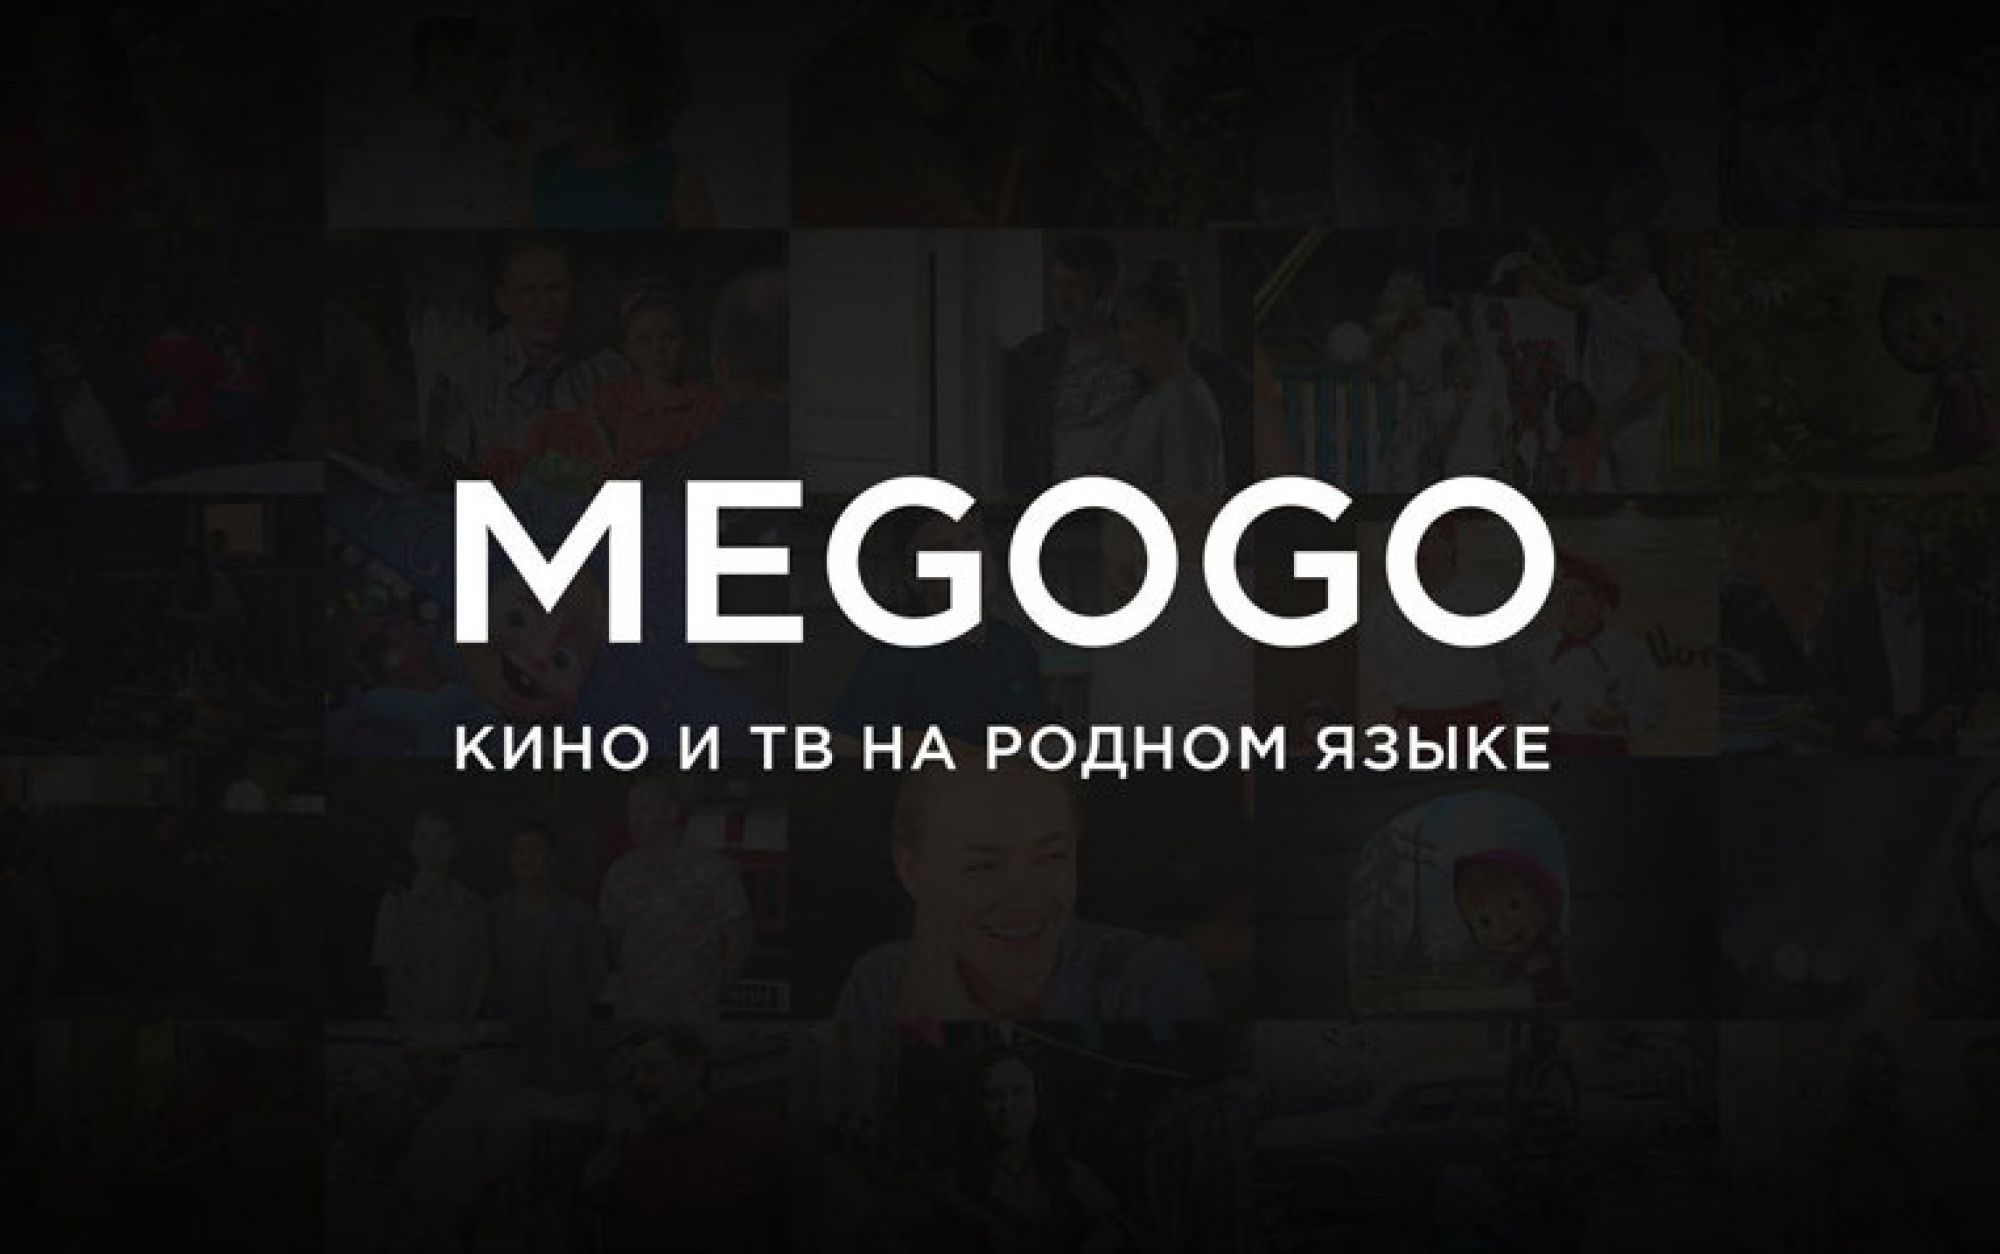 Megogo создал канал с кинотрейлерами